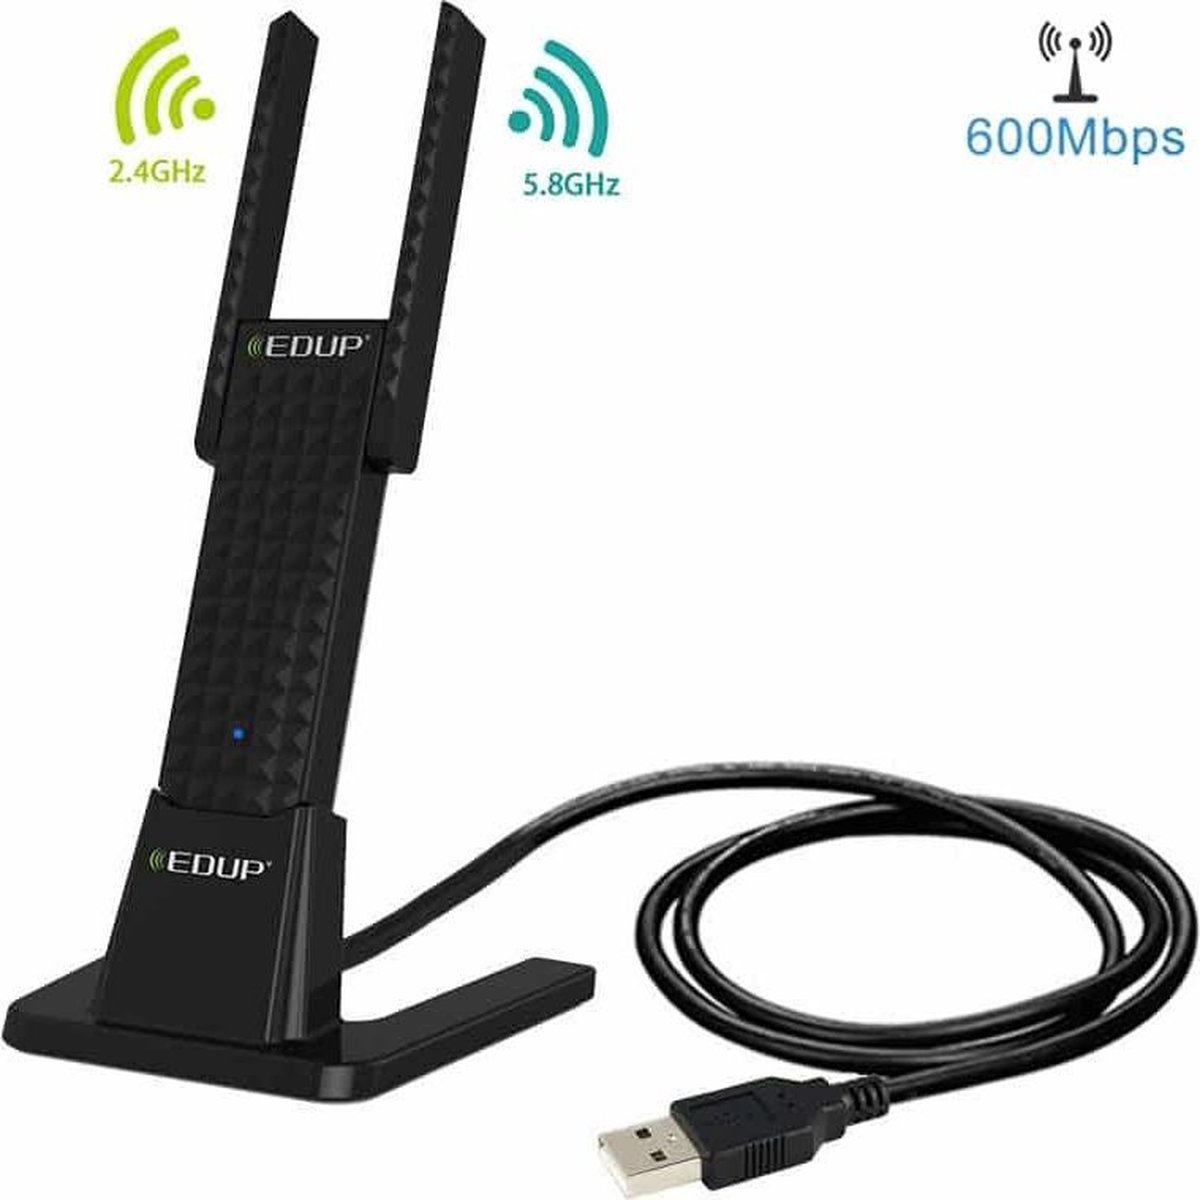 EDUP EP-AC1631 600 Mbps dual-band 11AC USB draadloze adapter WiFi-netwerkkaart met 2 antennes en basis voor laptop / pc (zwart)